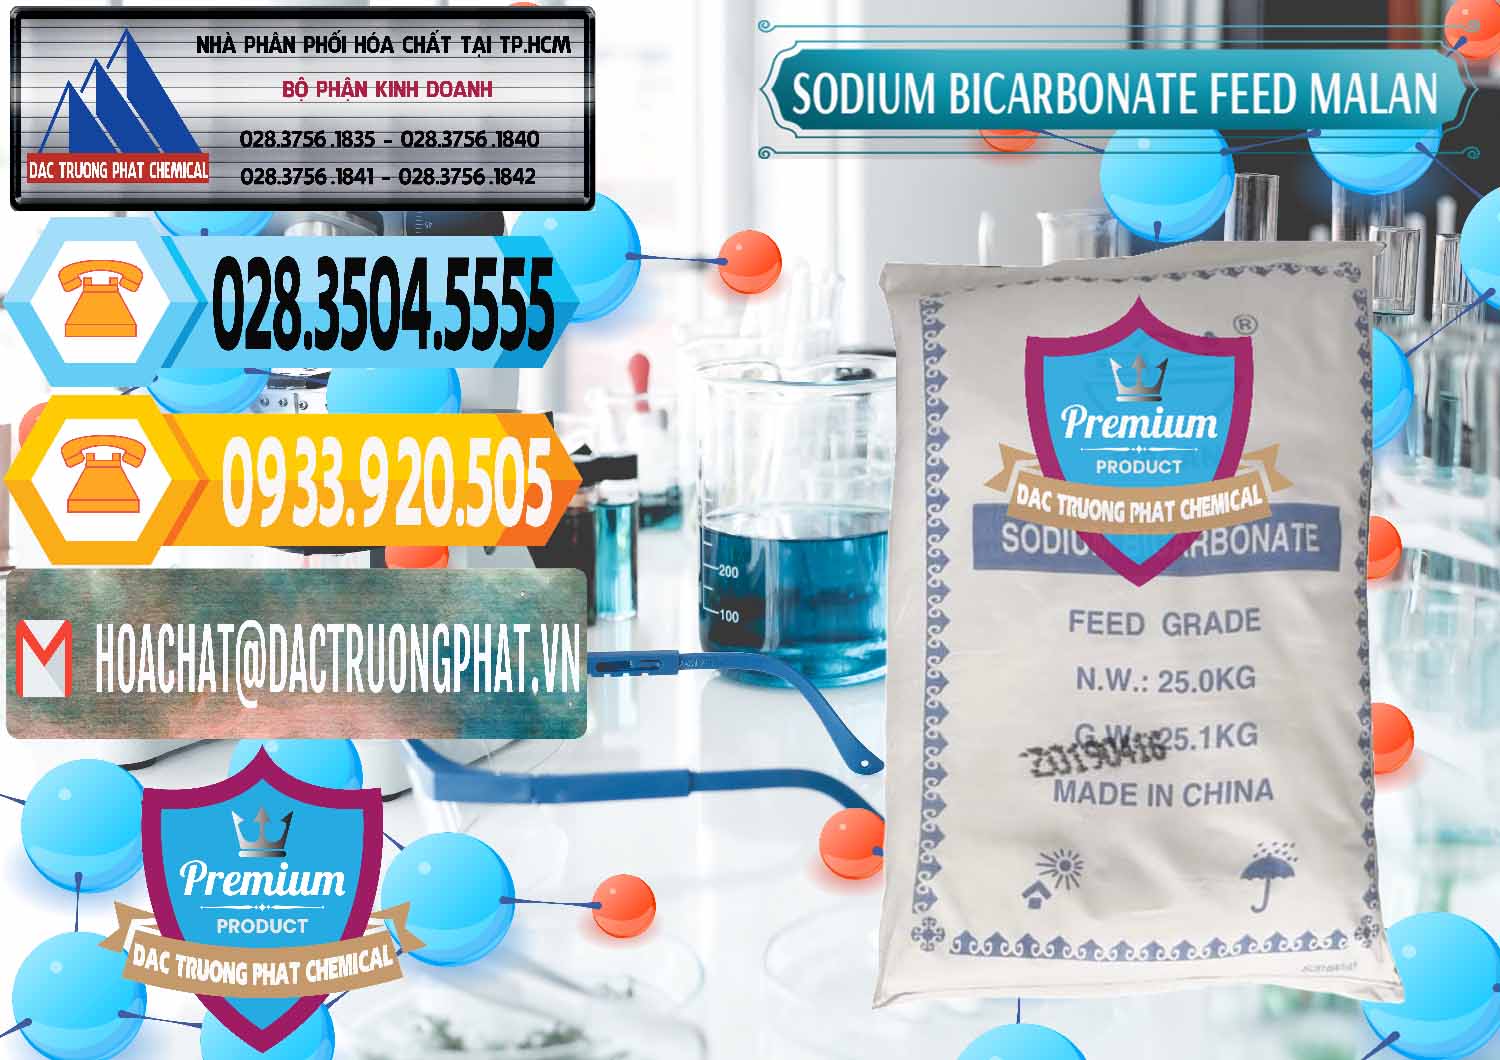 Nơi bán ( phân phối ) Sodium Bicarbonate – Bicar NaHCO3 Feed Grade Malan Trung Quốc China - 0262 - Chuyên bán và cung cấp hóa chất tại TP.HCM - hoachattayrua.net